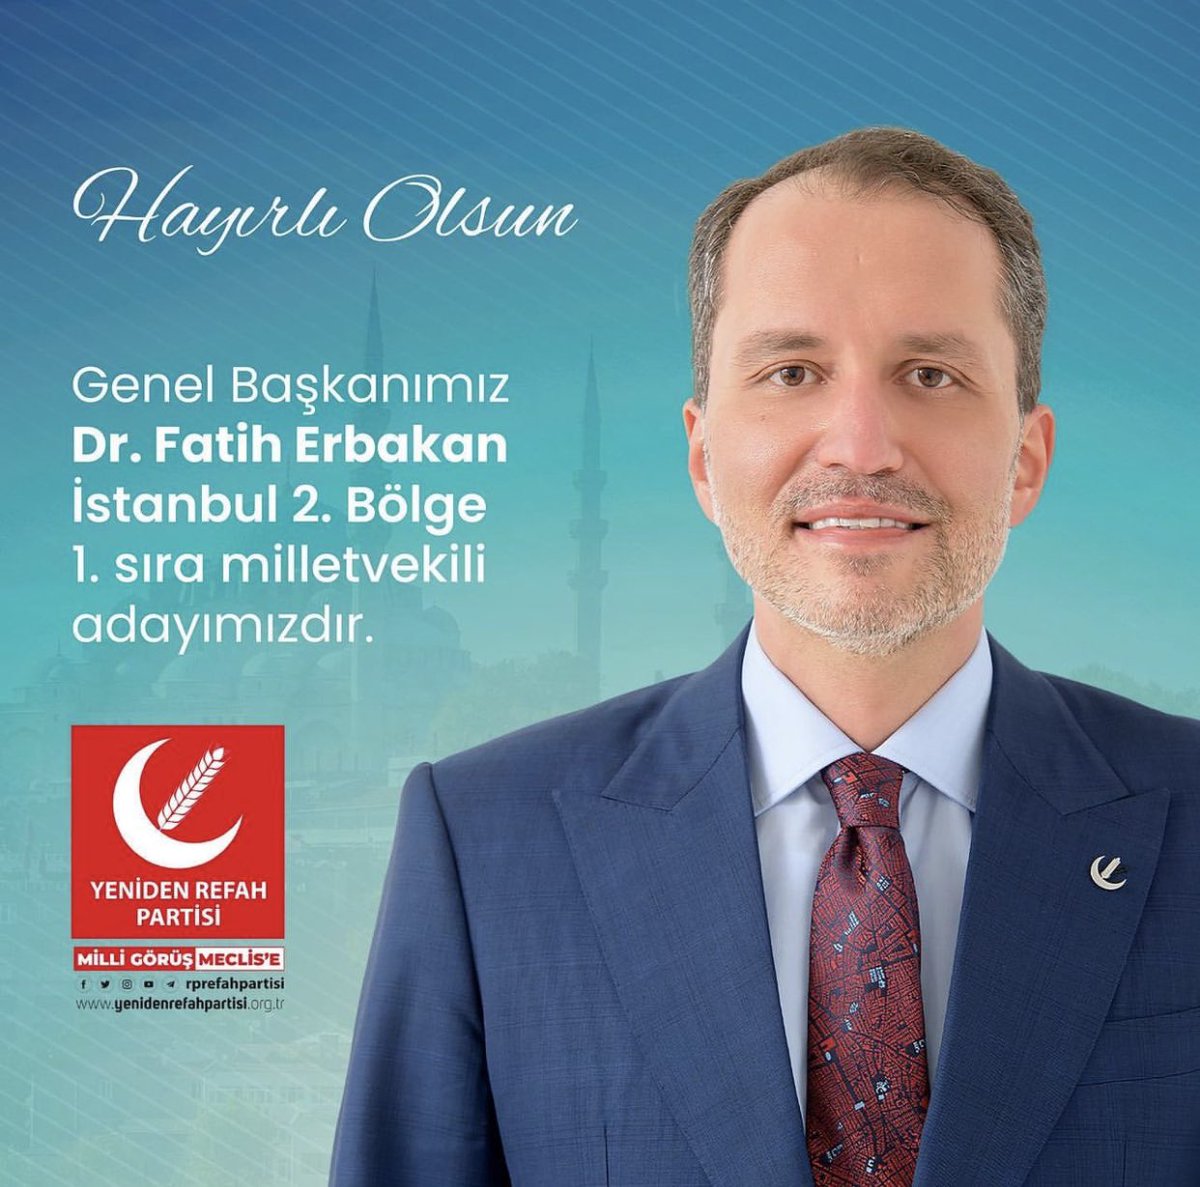 Yeniden Refah Partisi Genel Başkanı Dr. Fatih Erbakan İstanbul 2. Bölge 1. Sıradan Milletvekili Adayı Çıkmıştır. 

#askmrunal #Caturday #EXOCLOCK_D1 #GTvKKR #LazioJuve